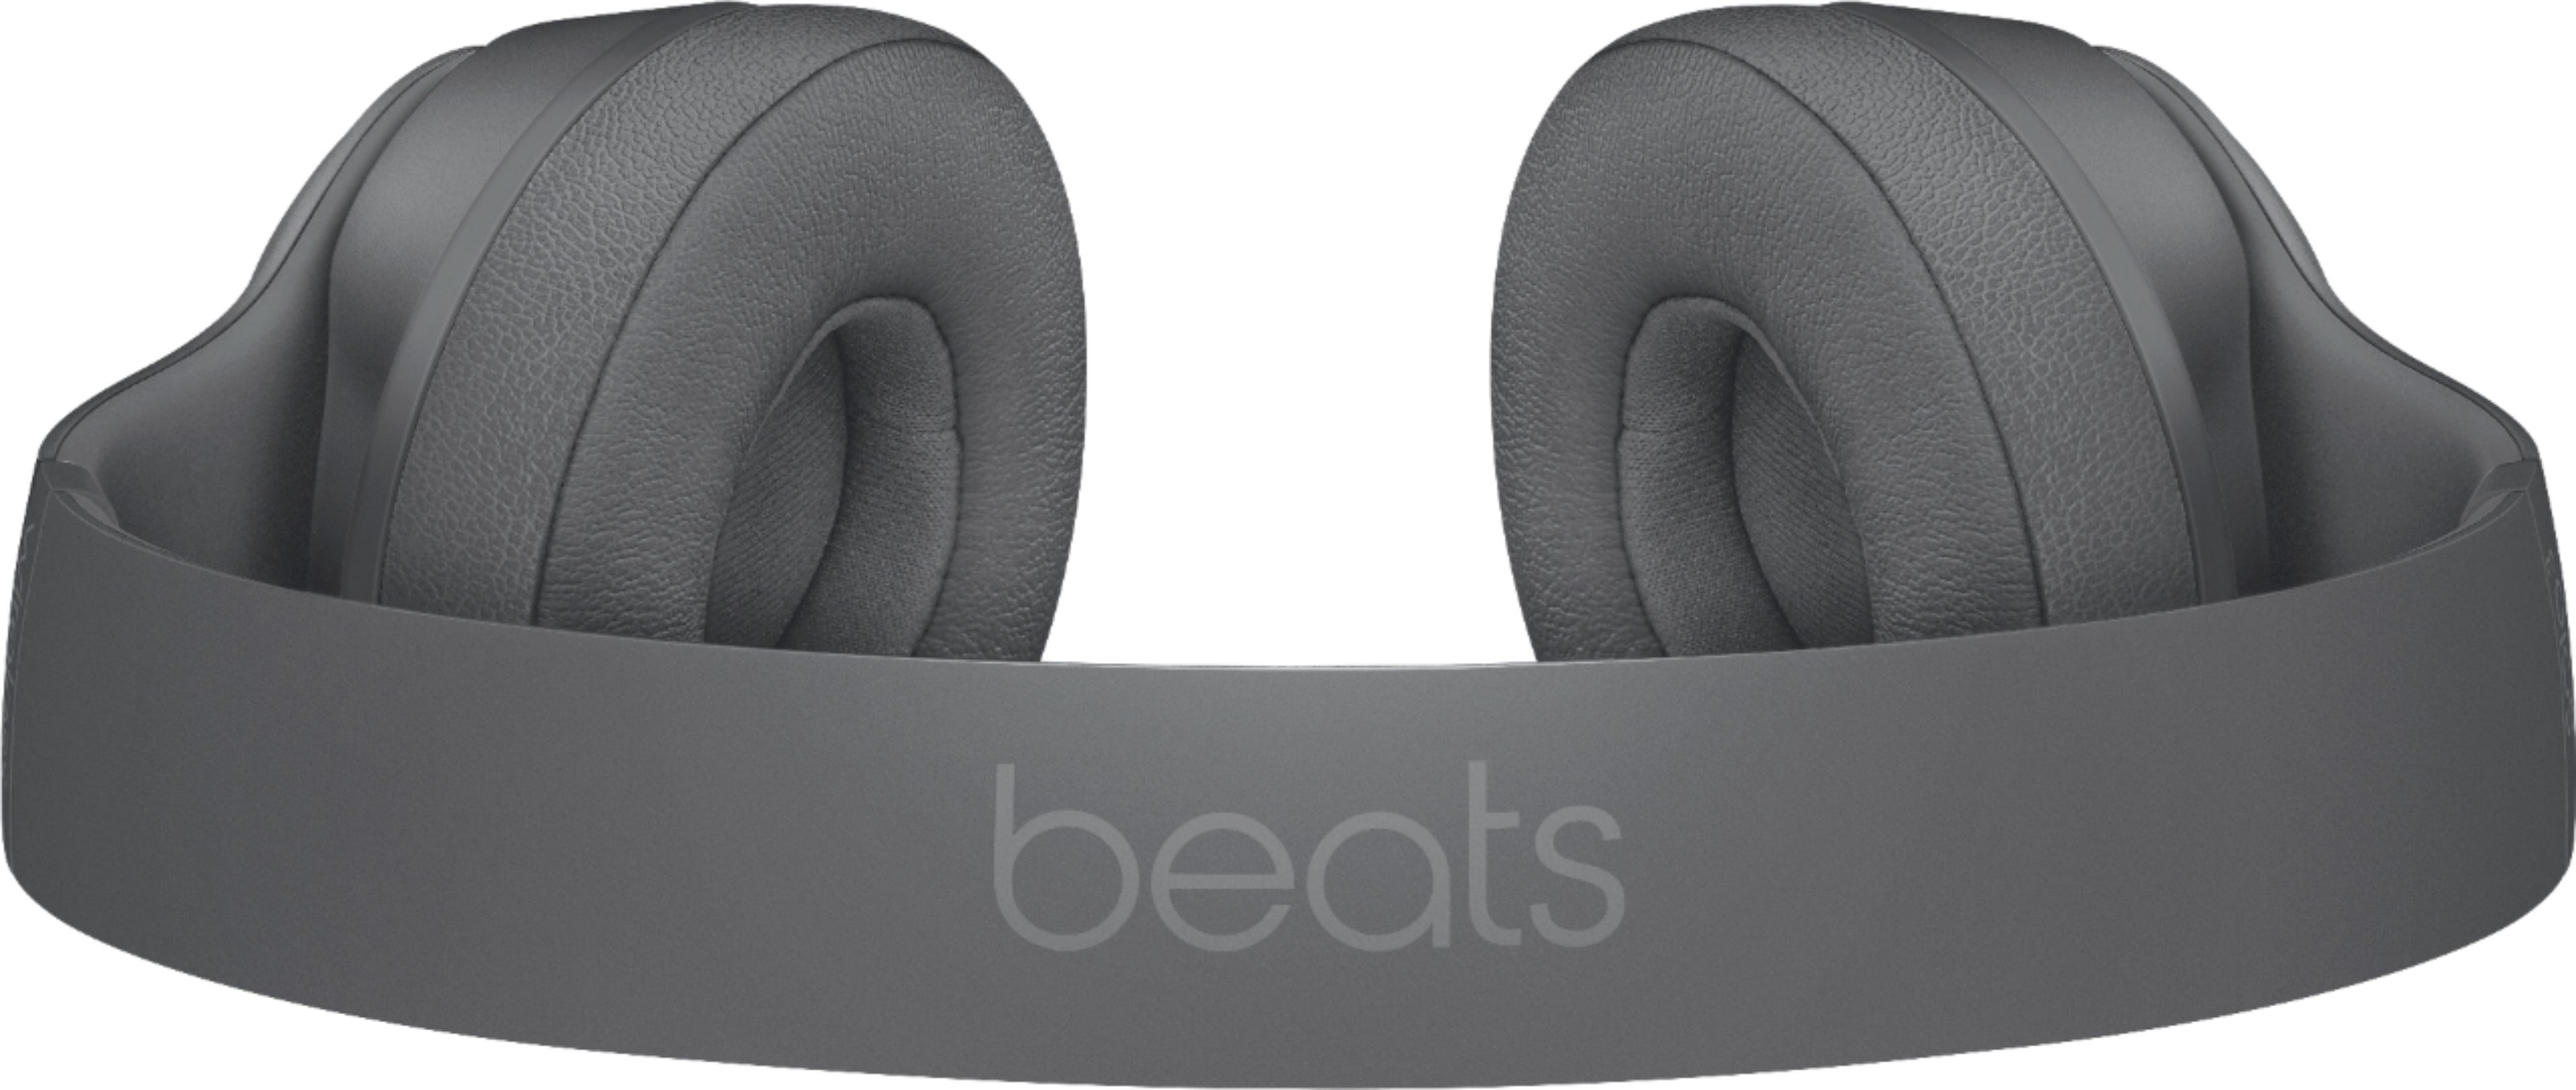 Best Buy: Beats by Dr. Dre Beats Solo3 Wireless Headphones 